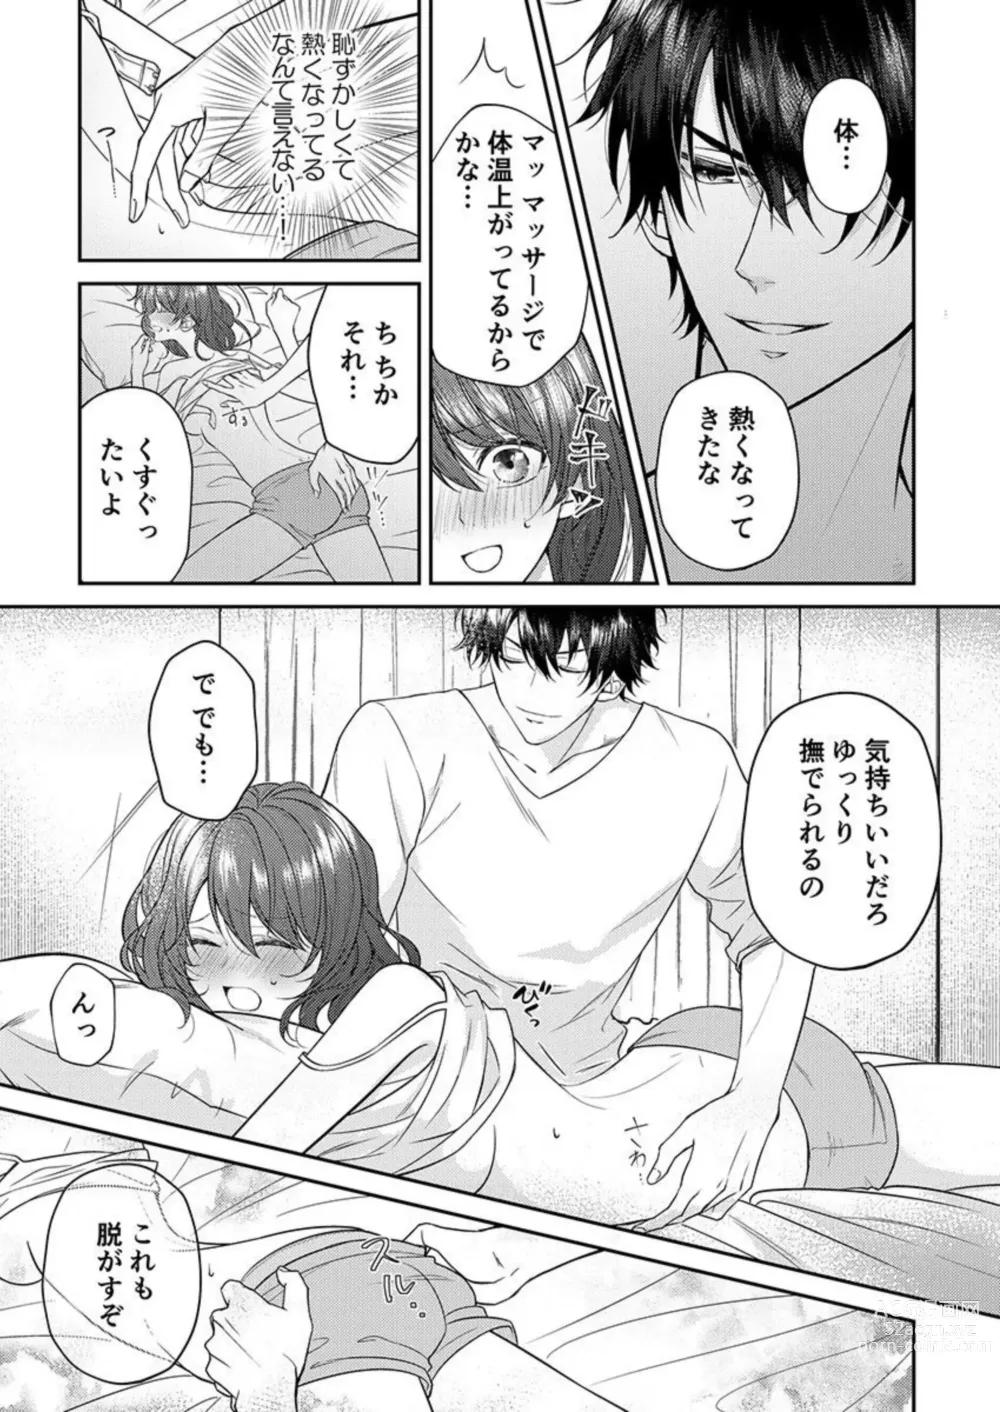 Page 13 of manga Osananajimi wa Mou Yameta.